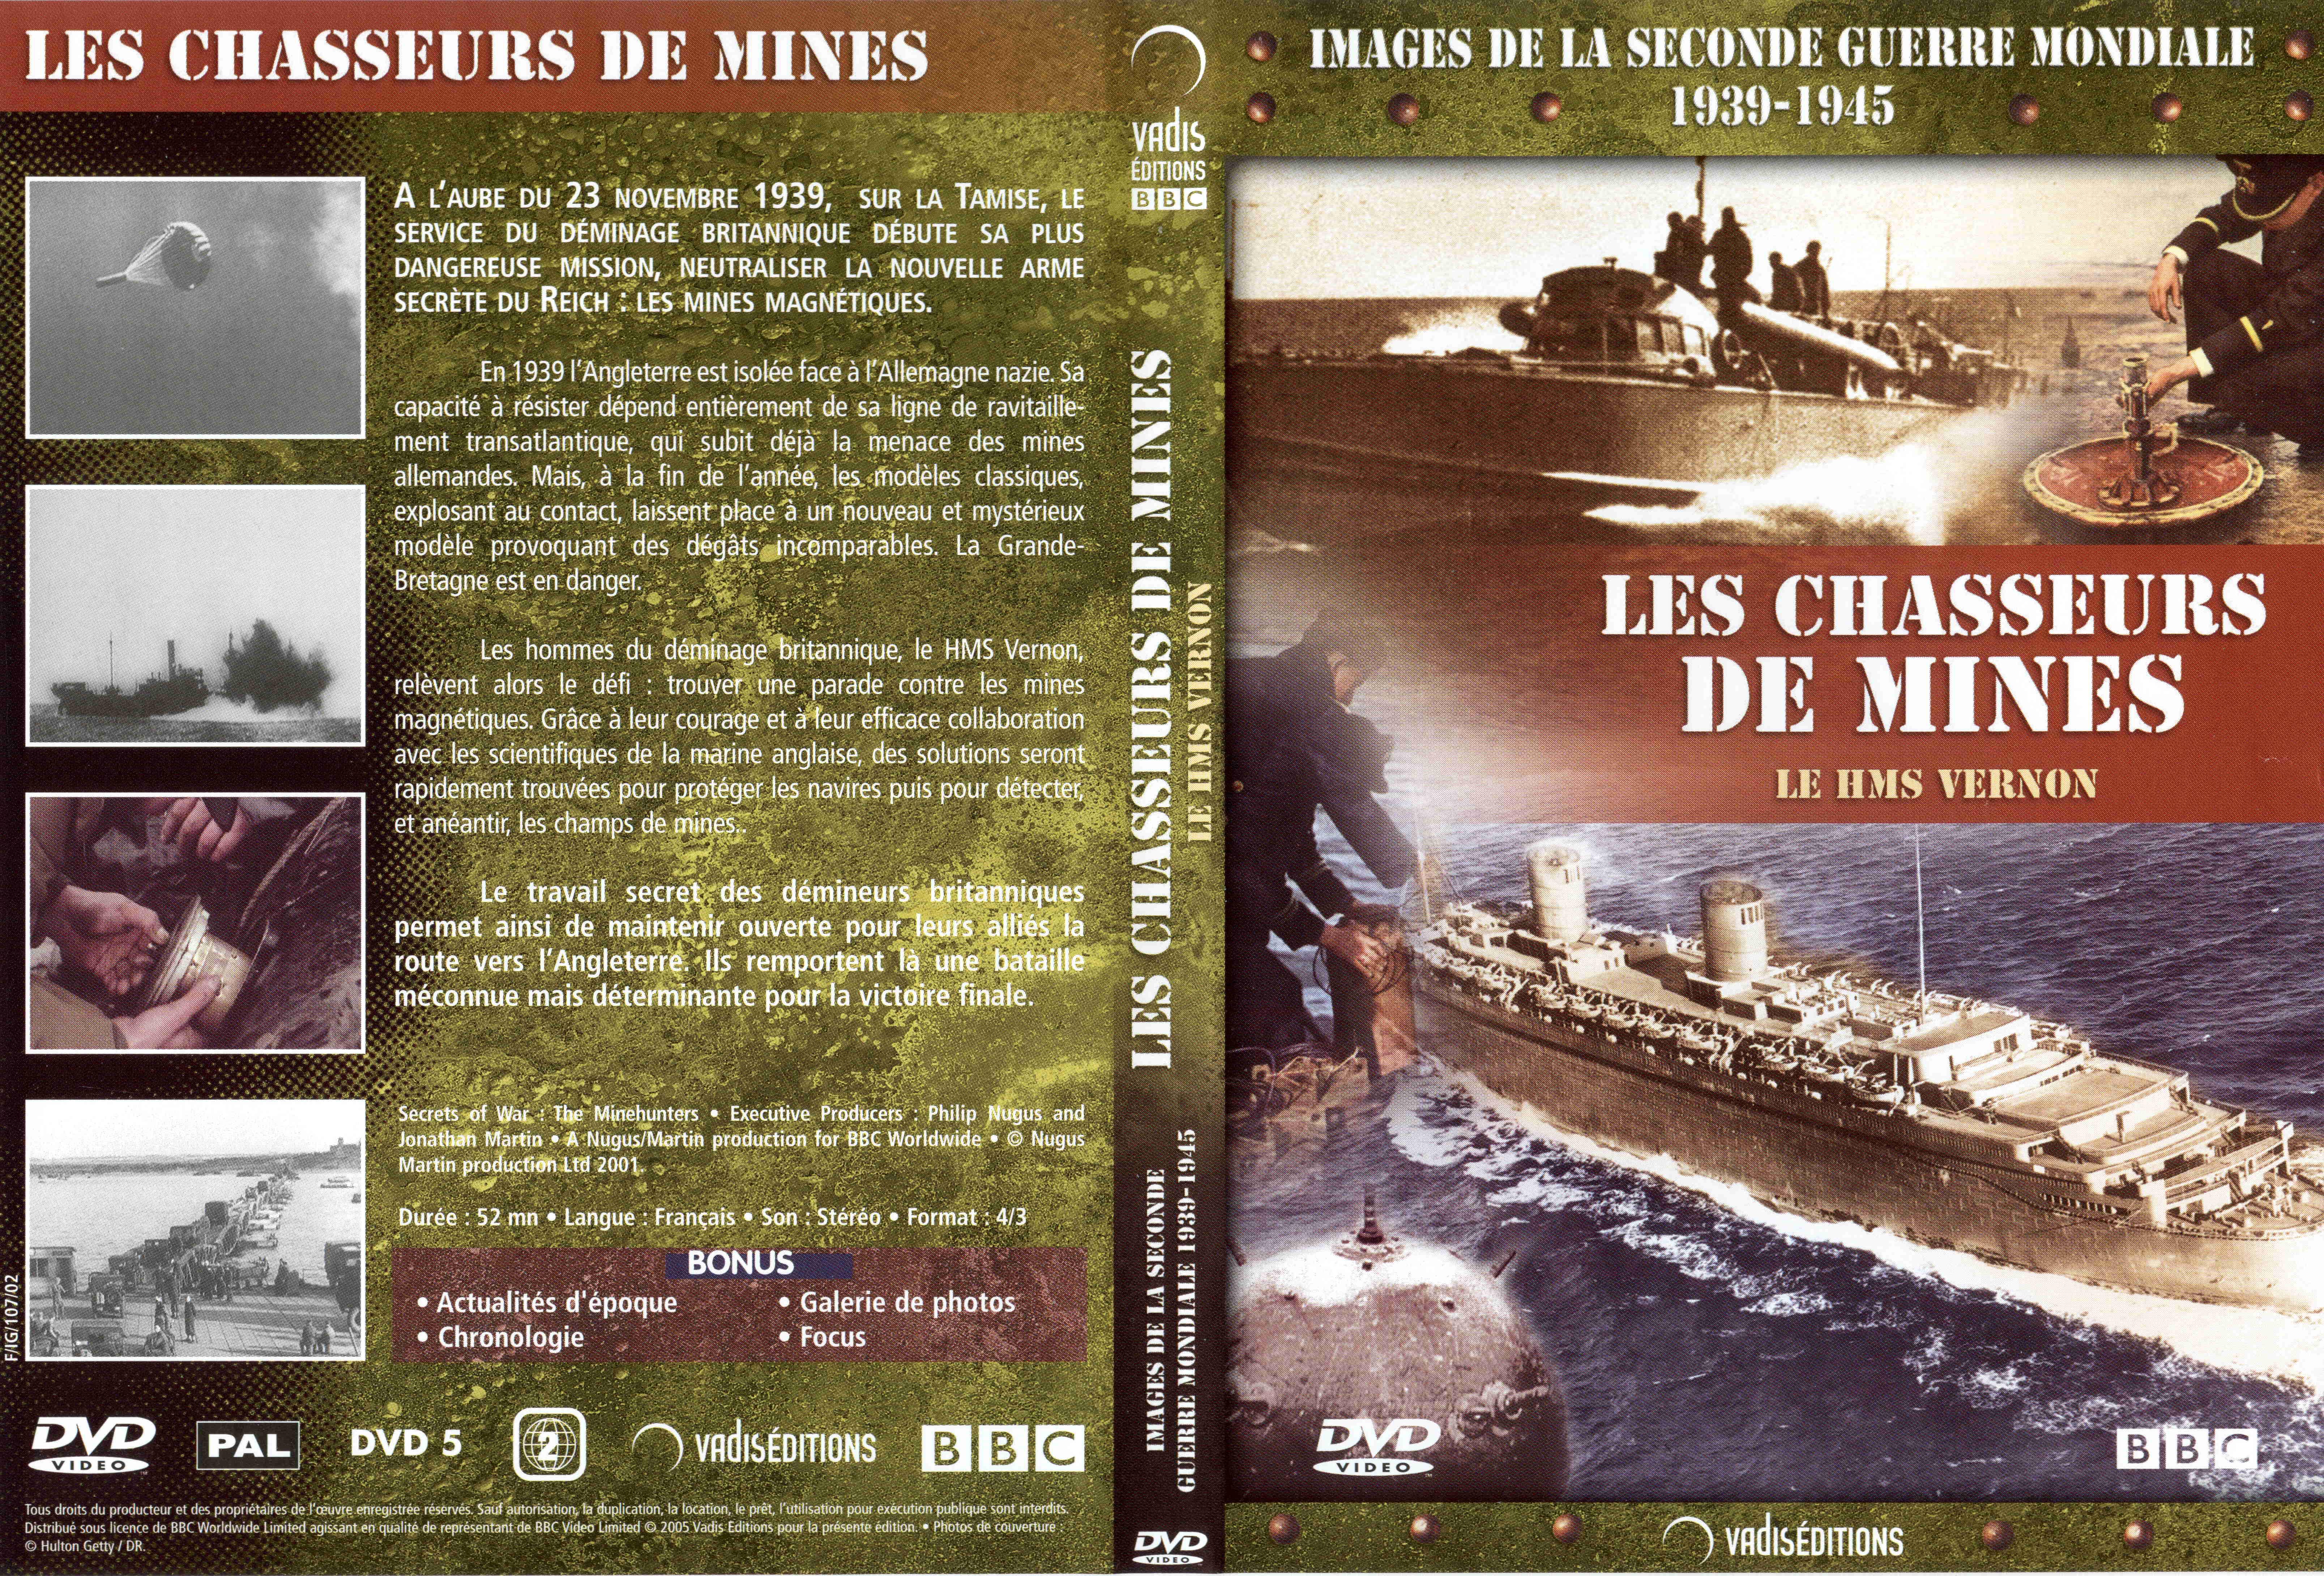 Jaquette DVD Images de la seconde guerre mondiale - Les chasseurs de mines